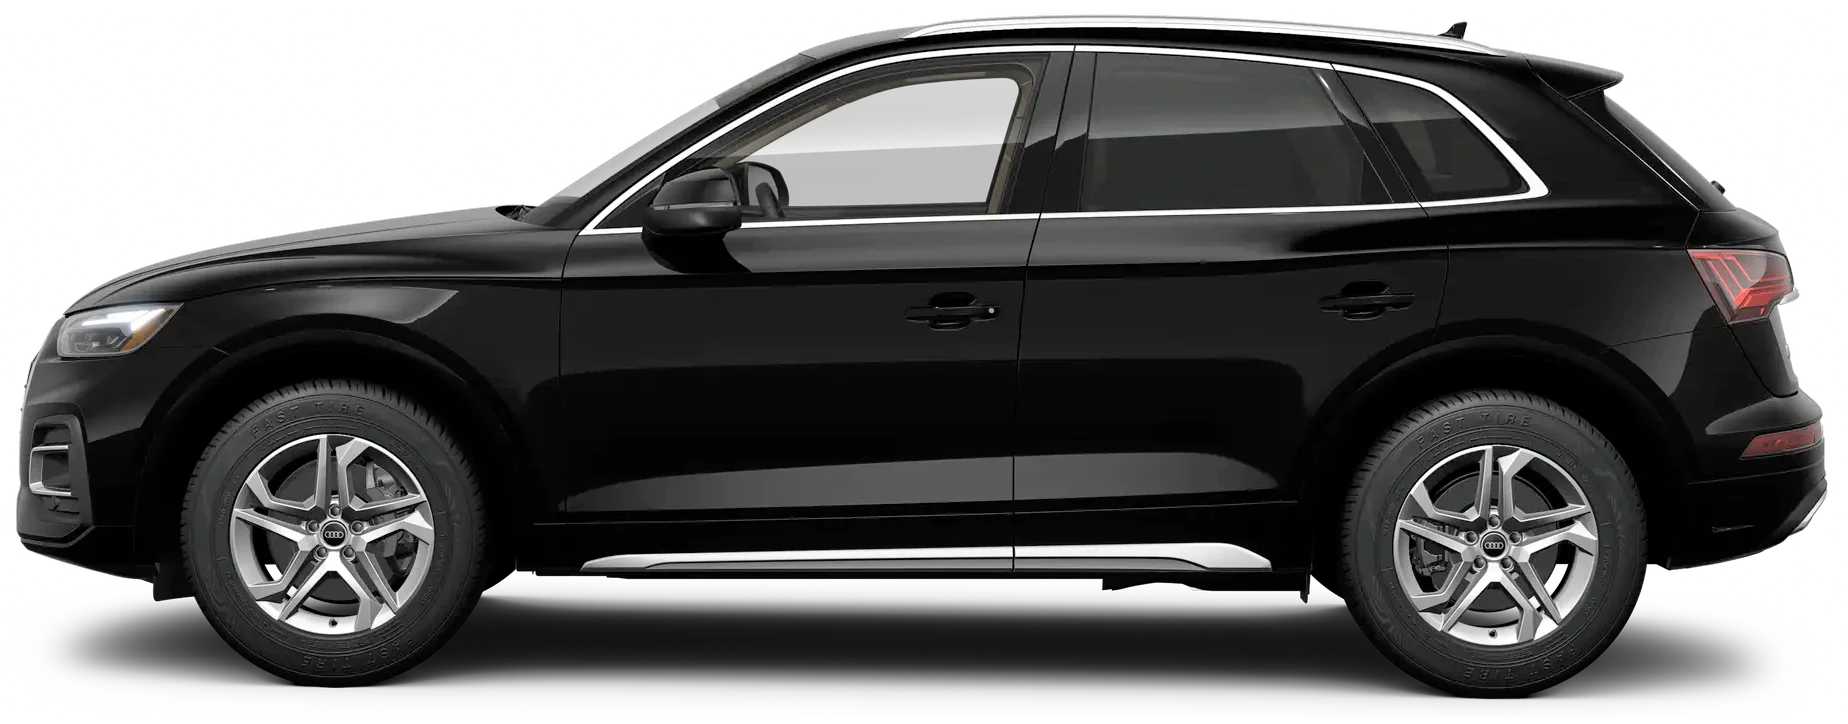 أودي SQ5 exterior - Side Profile